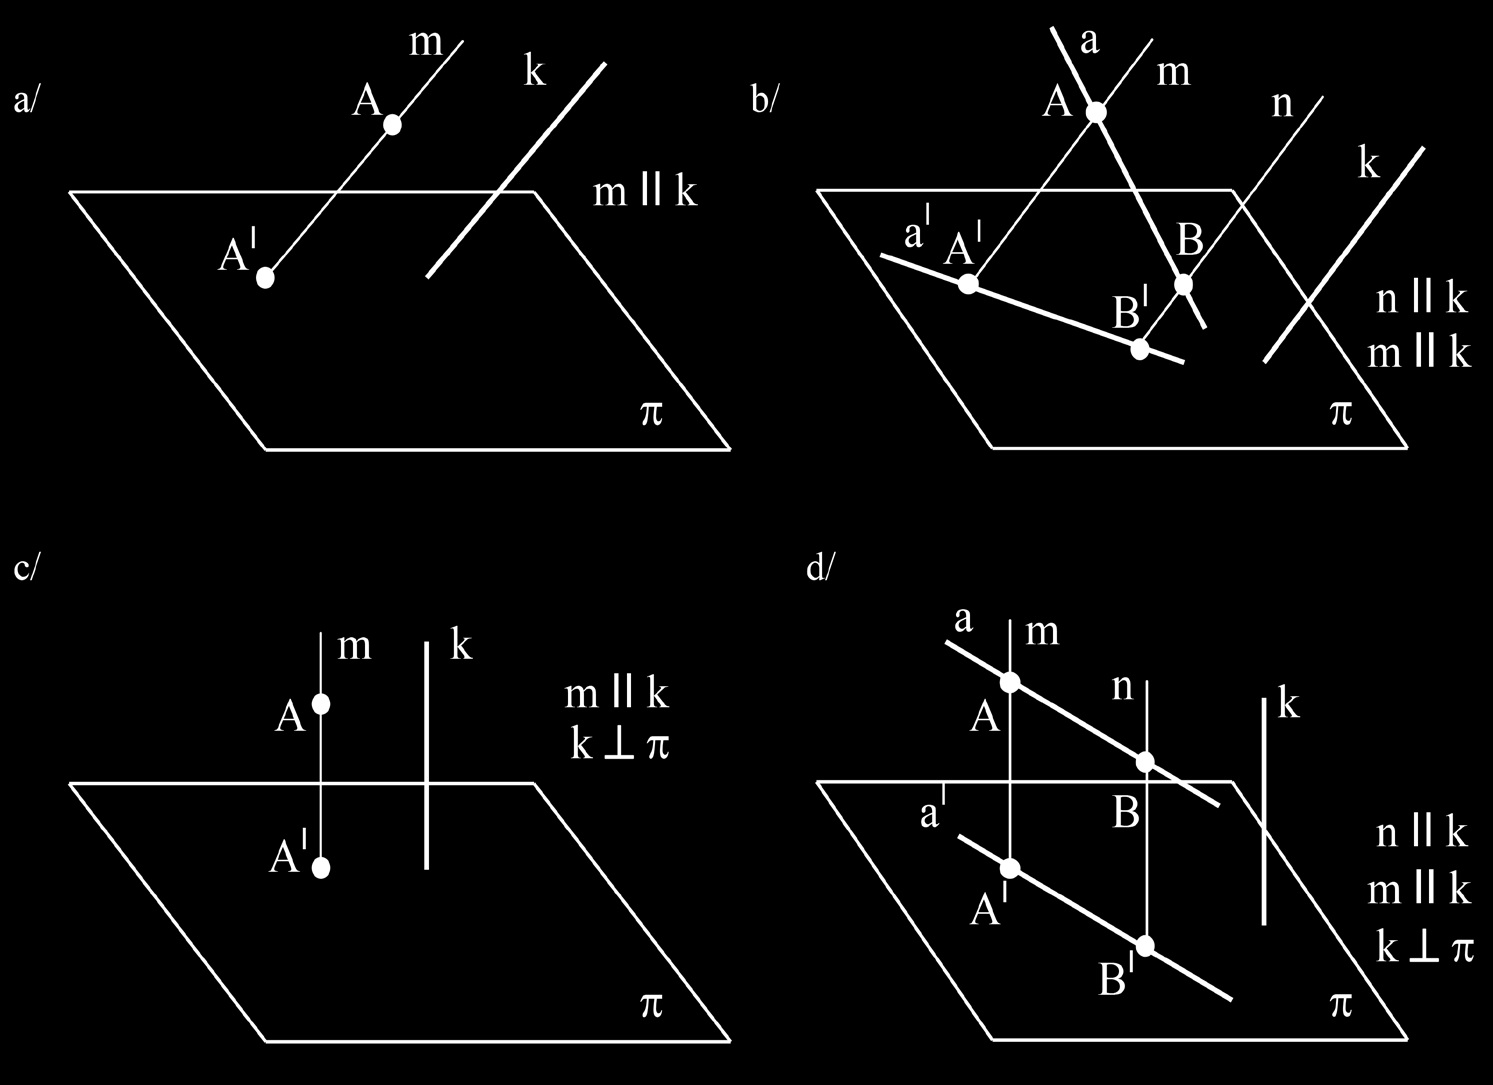 Rzutem dowolnego punktu A na rzutnię p jest punkt oznaczony A I, w którym prosta rzutująca m II k, przechodząca przez punkt A, przebija rzutnię p (rys. 2.2a).